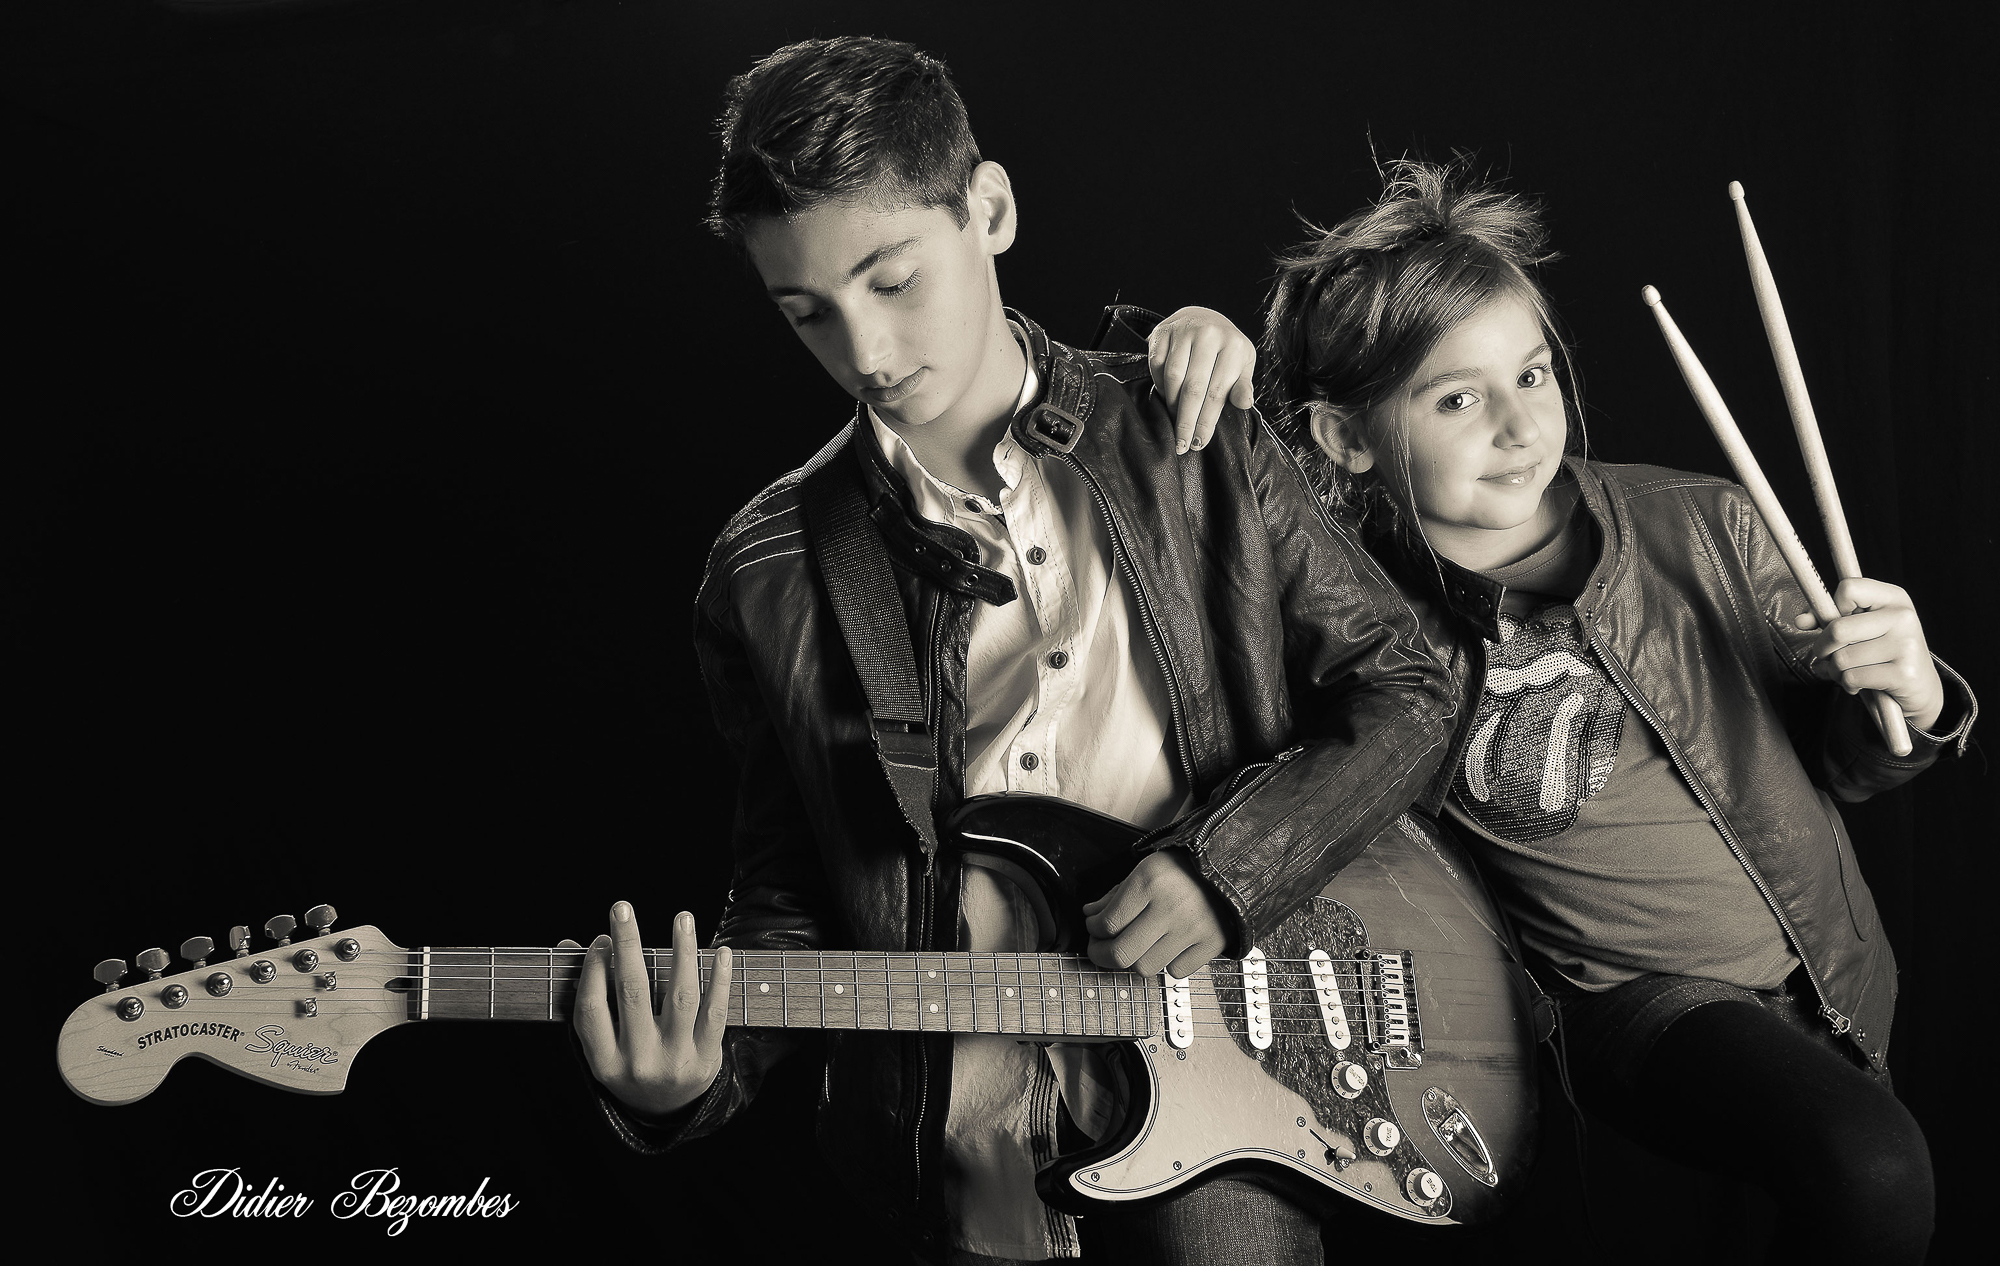 portrait-en-noir-et-blanc-photo-faite-en-studio-d'un-frère-avec-sa-soeur-le-garçon-a-une-guitar-electrique-et-la-fille-a-des-baguettes-de-tambour-photographe-de-portrait-Didier-Bezombes-Aveyron